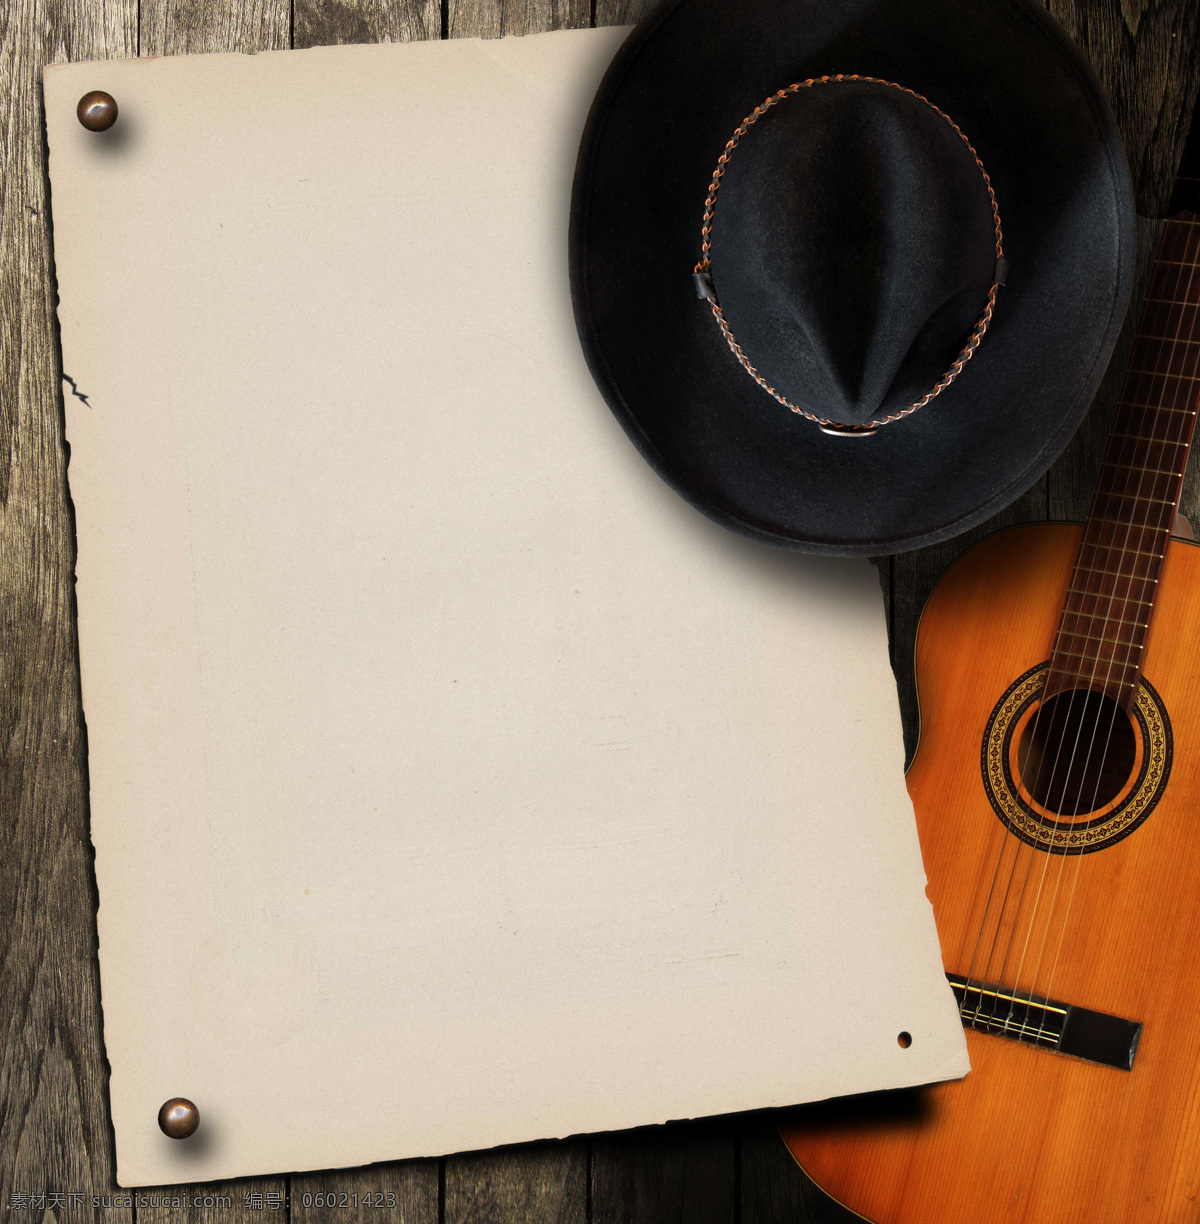 吉他 帽子 空白 纸 背景 乐器 音乐背景 空白纸 影音娱乐 生活百科